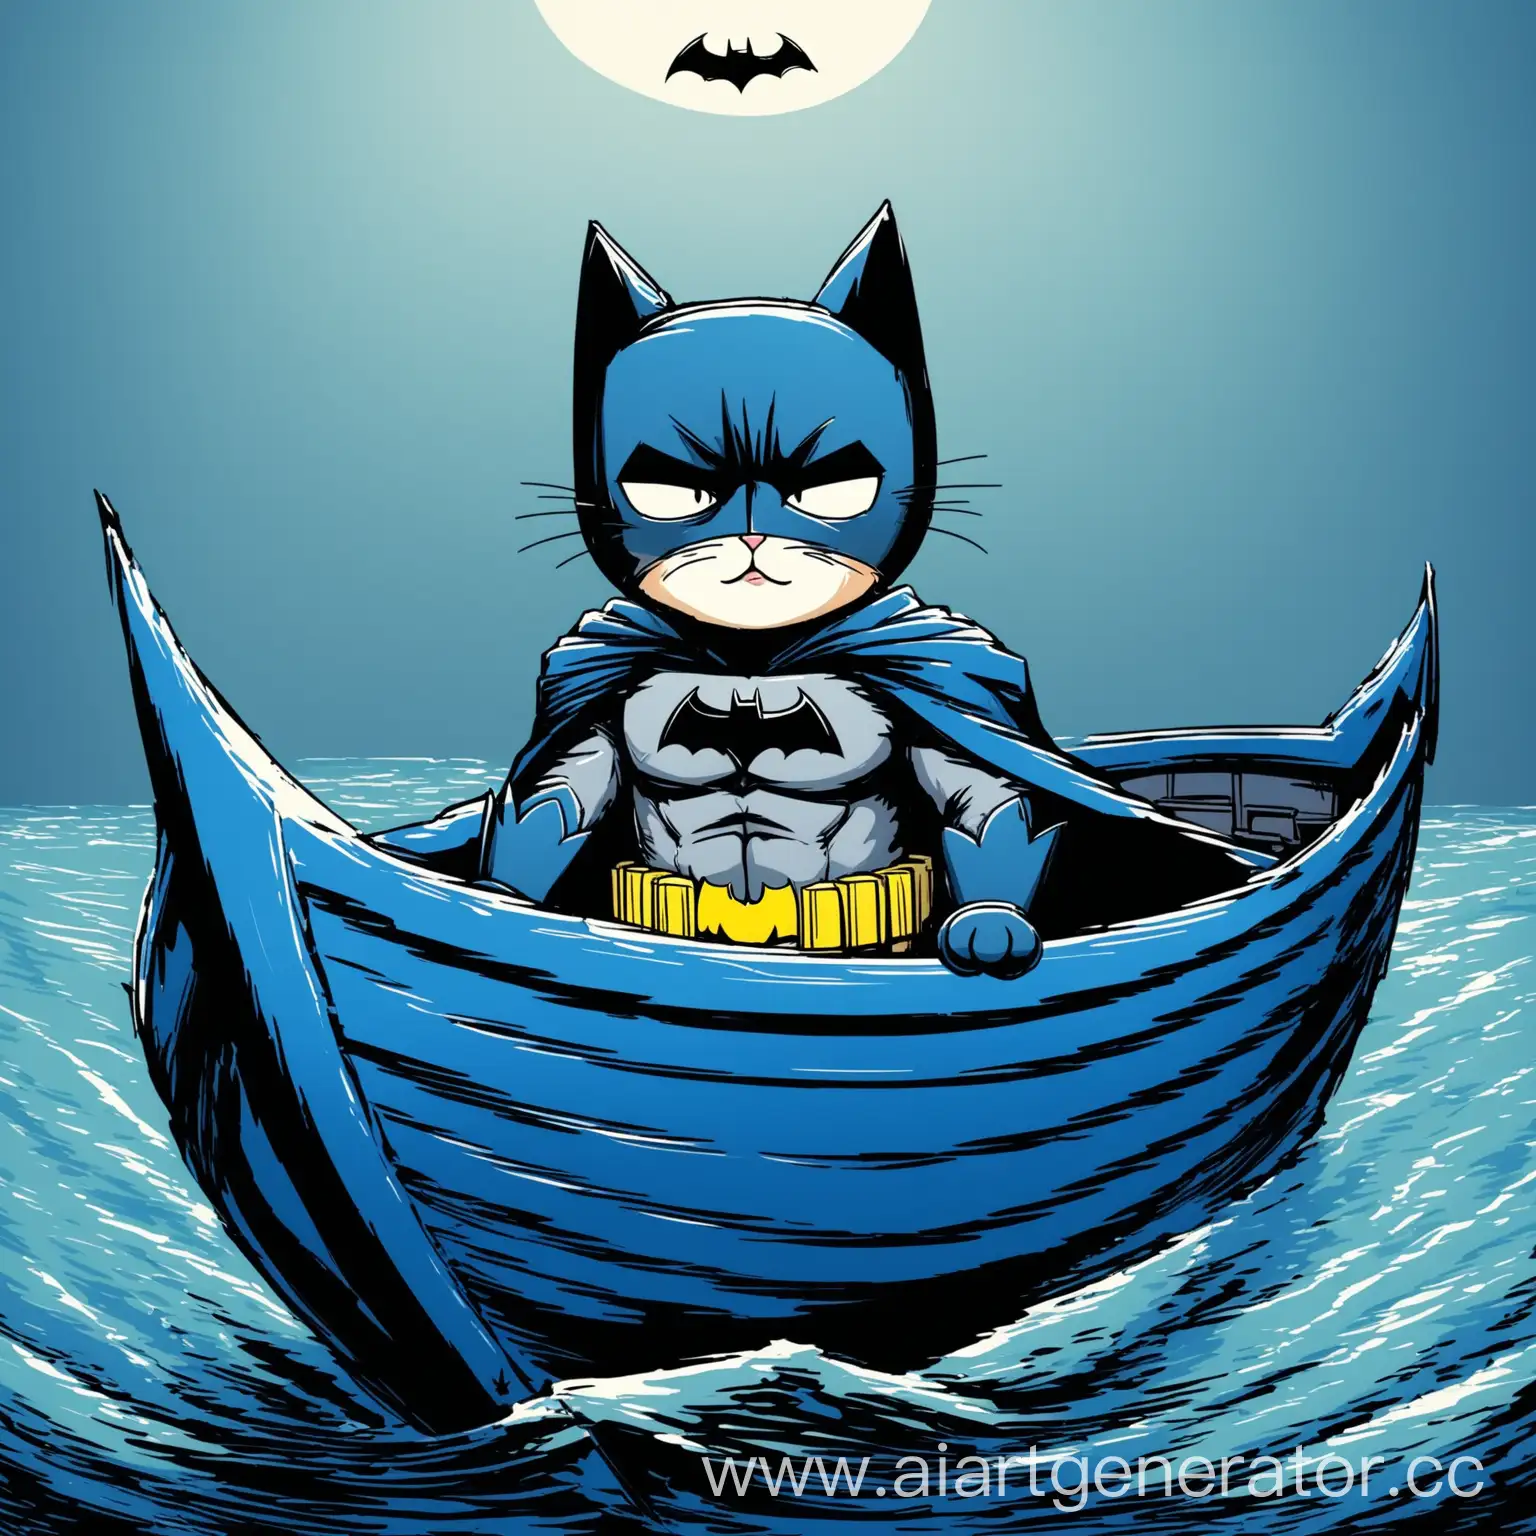 кошка-бэтмен в лодке в голубых цветах